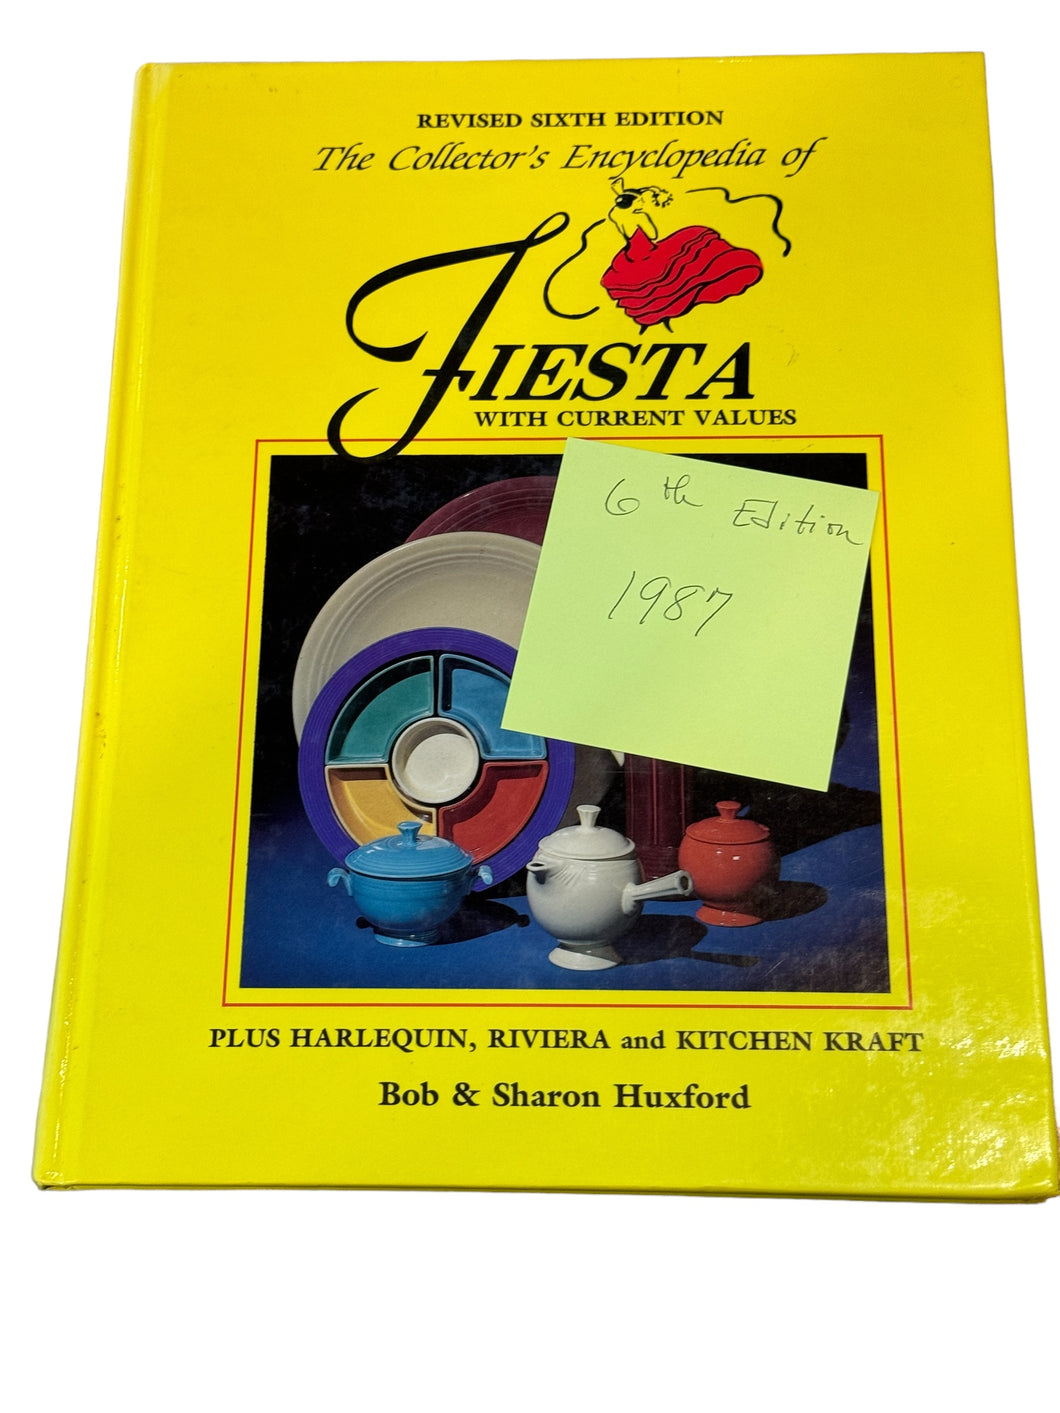 Collectors Book 6th Edition Collectors Edition Encyclopedia Fiesta Sharon & Bob Huxford